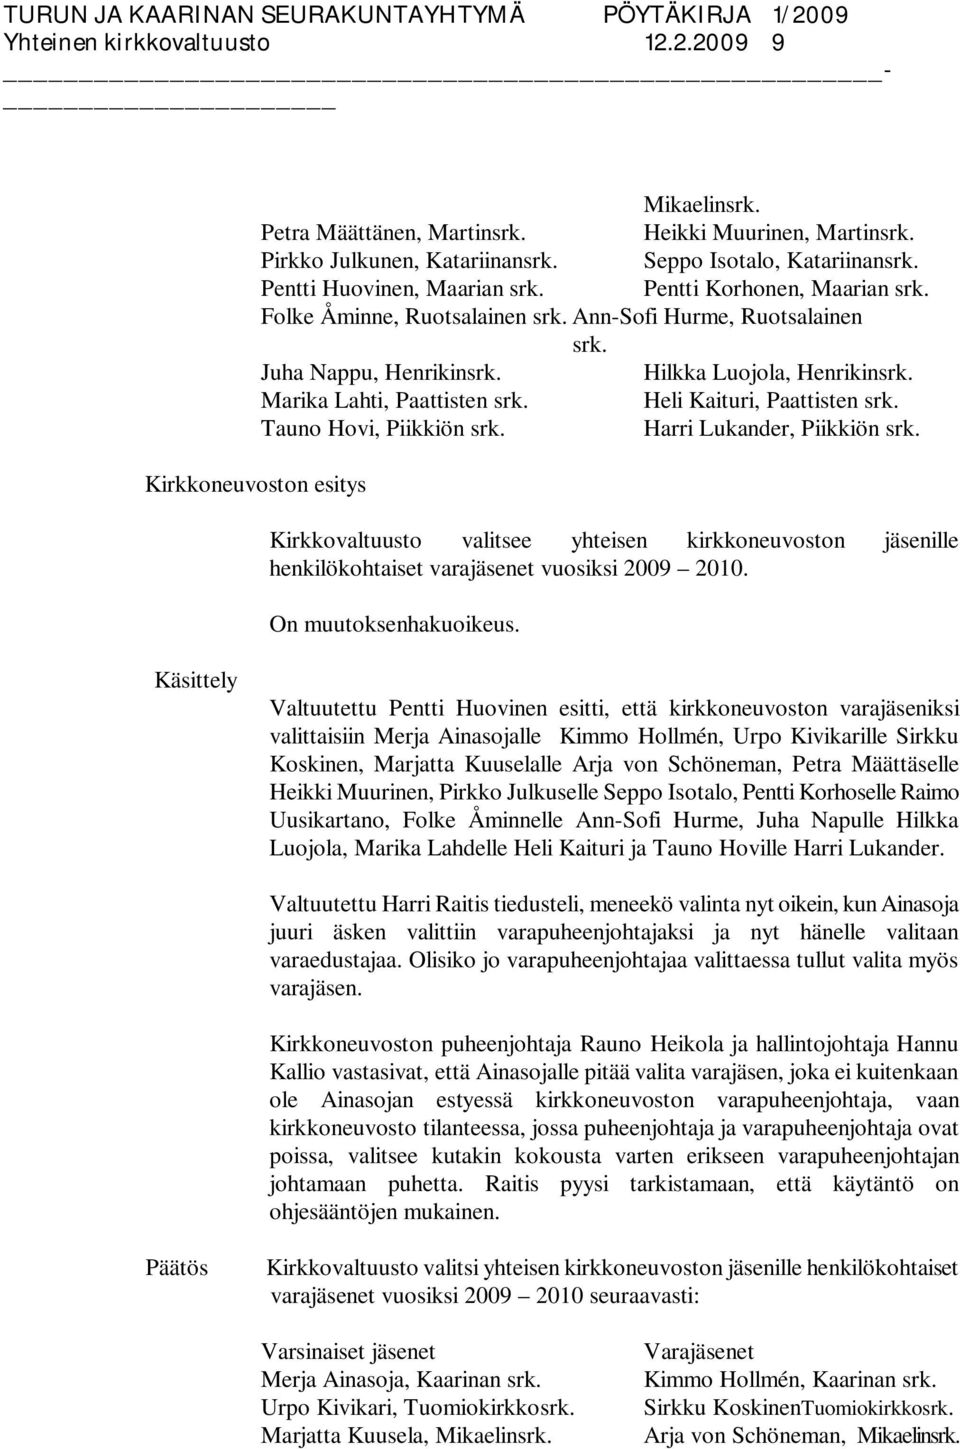 Heli Kaituri, Paattisten srk. Tauno Hovi, Piikkiön srk. Harri Lukander, Piikkiön srk. Kirkkovaltuusto valitsee yhteisen kirkkoneuvoston jäsenille henkilökohtaiset varajäsenet vuosiksi 2009 2010.